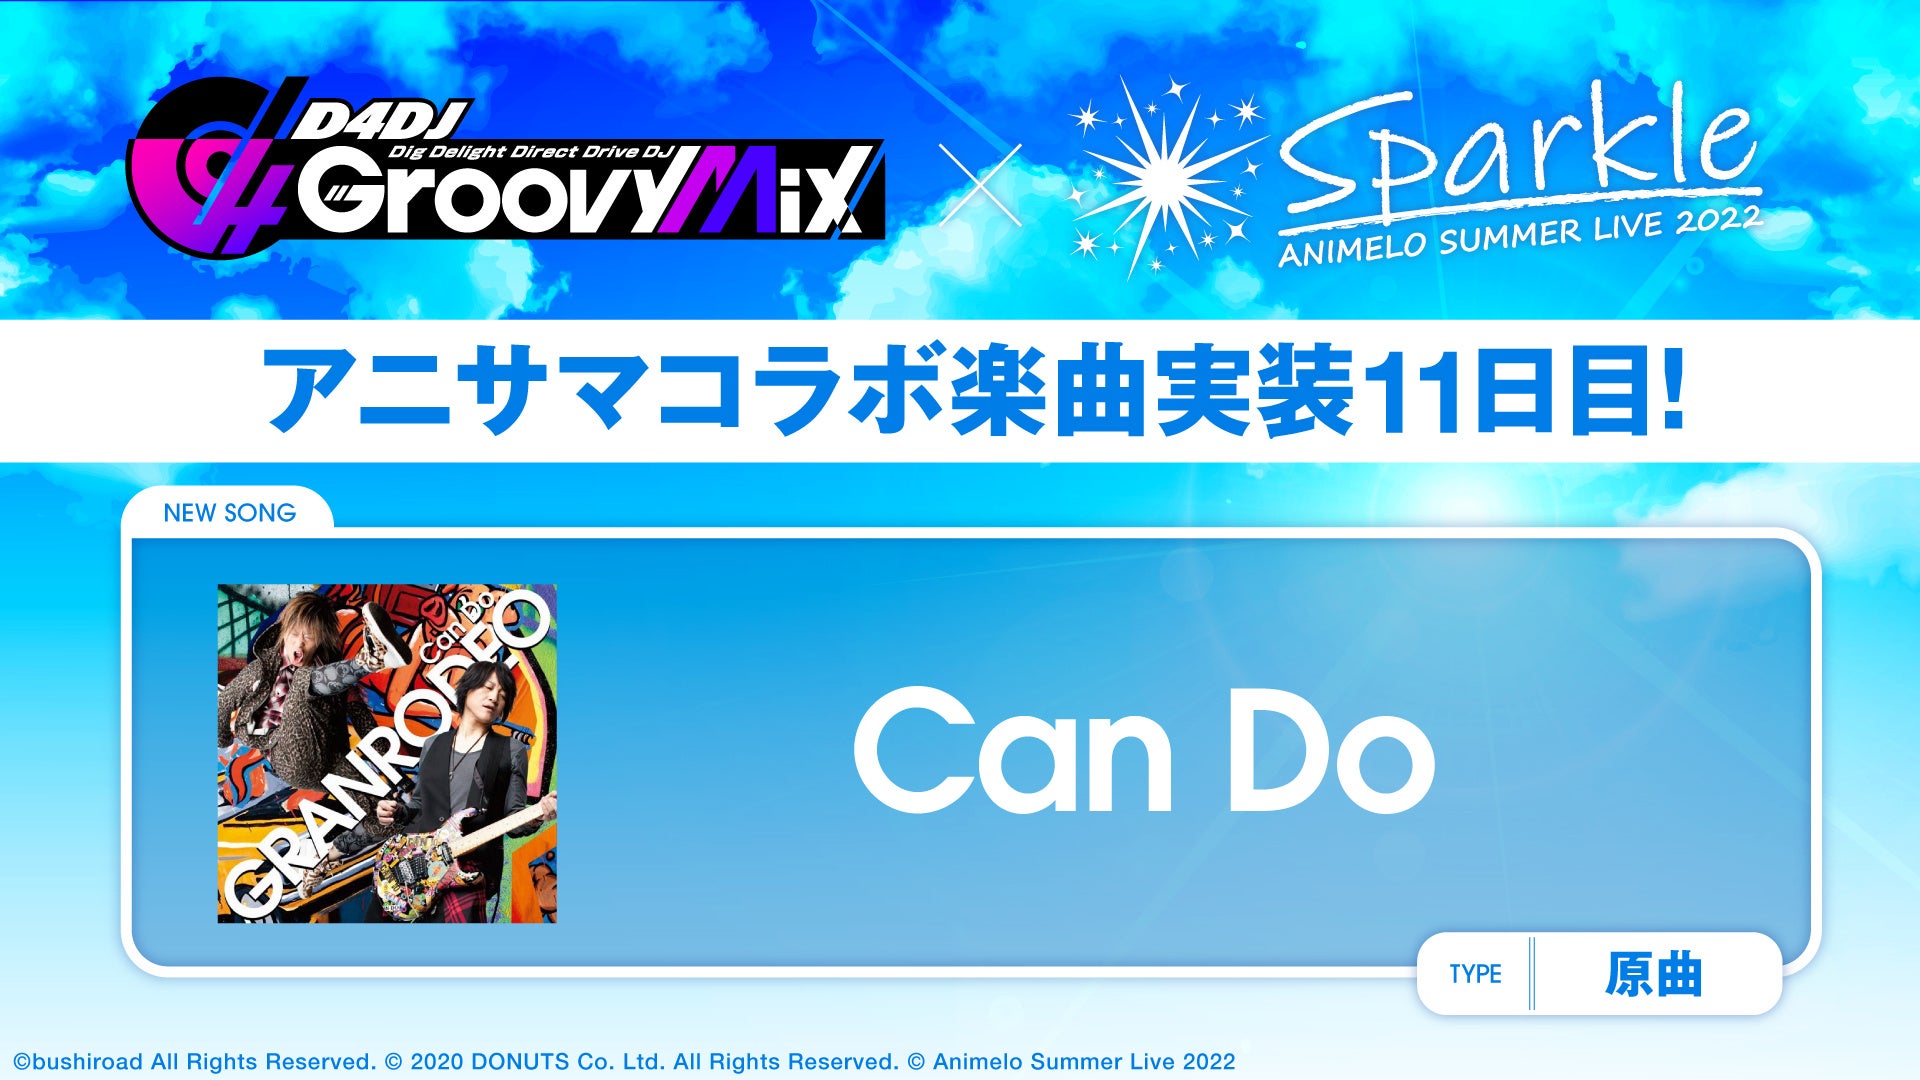 スマートフォン向けリズムゲーム「D4DJ Groovy Mix」にアニサマコラボ楽曲「Can Do」カバーを追加！